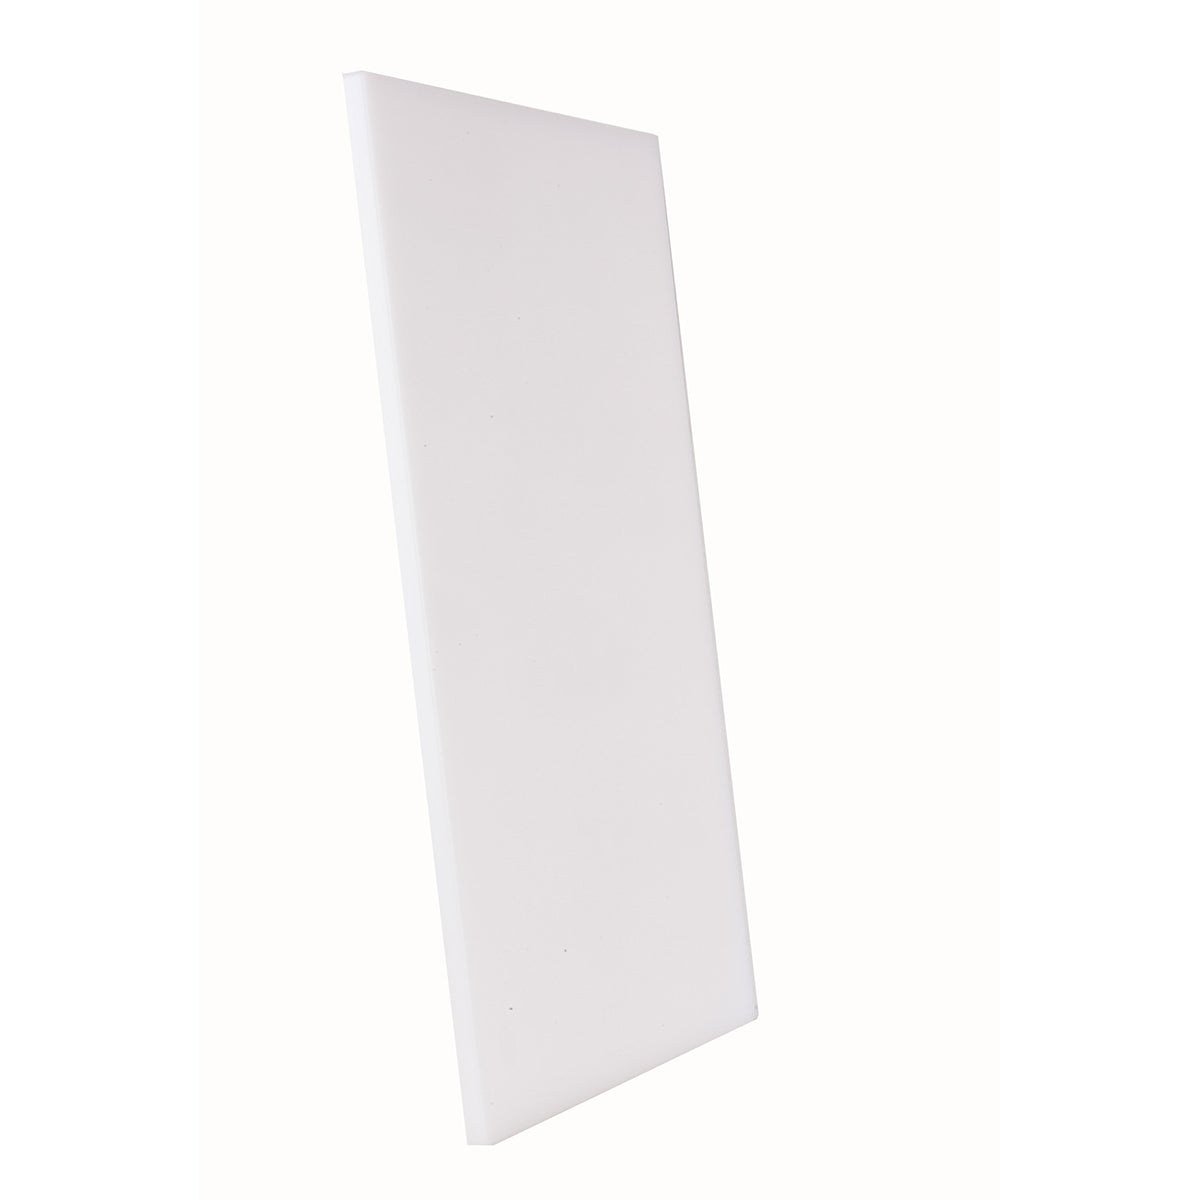 Tabla para Picar de Plástico Blanca de 38 x 51 cm NFS